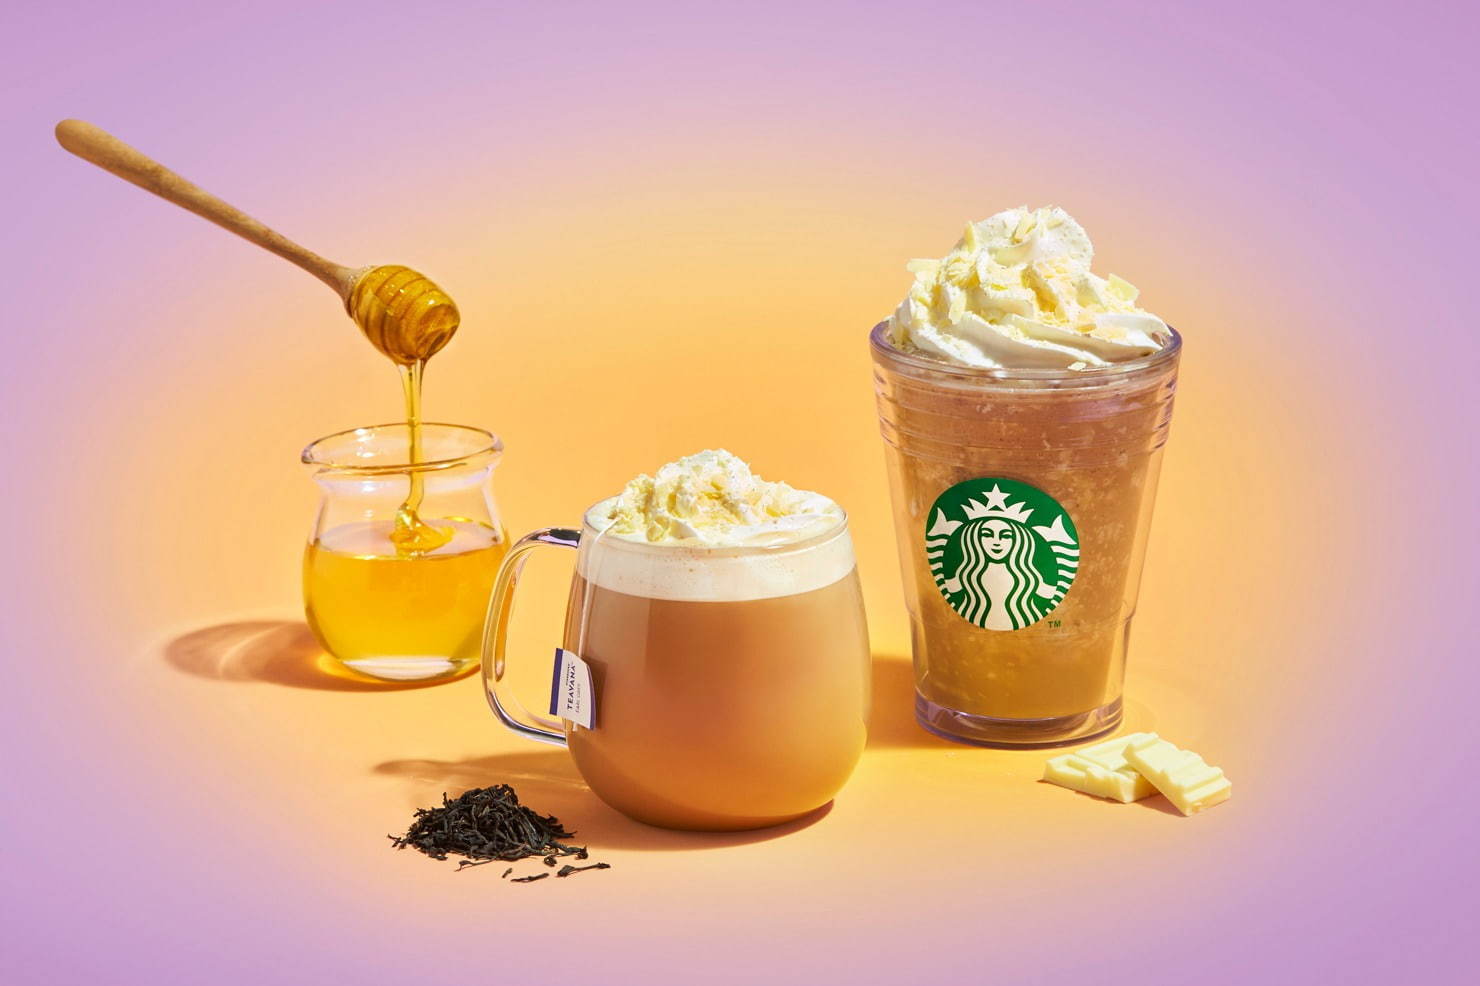 【Starbucks Coffee】華やかな香りと紅茶の深みを引き立たせたアールグレイ ティーとミルクのハーモニーを楽しむ『アールグレイハニーホイップ フラペチーノ® 』を発売。